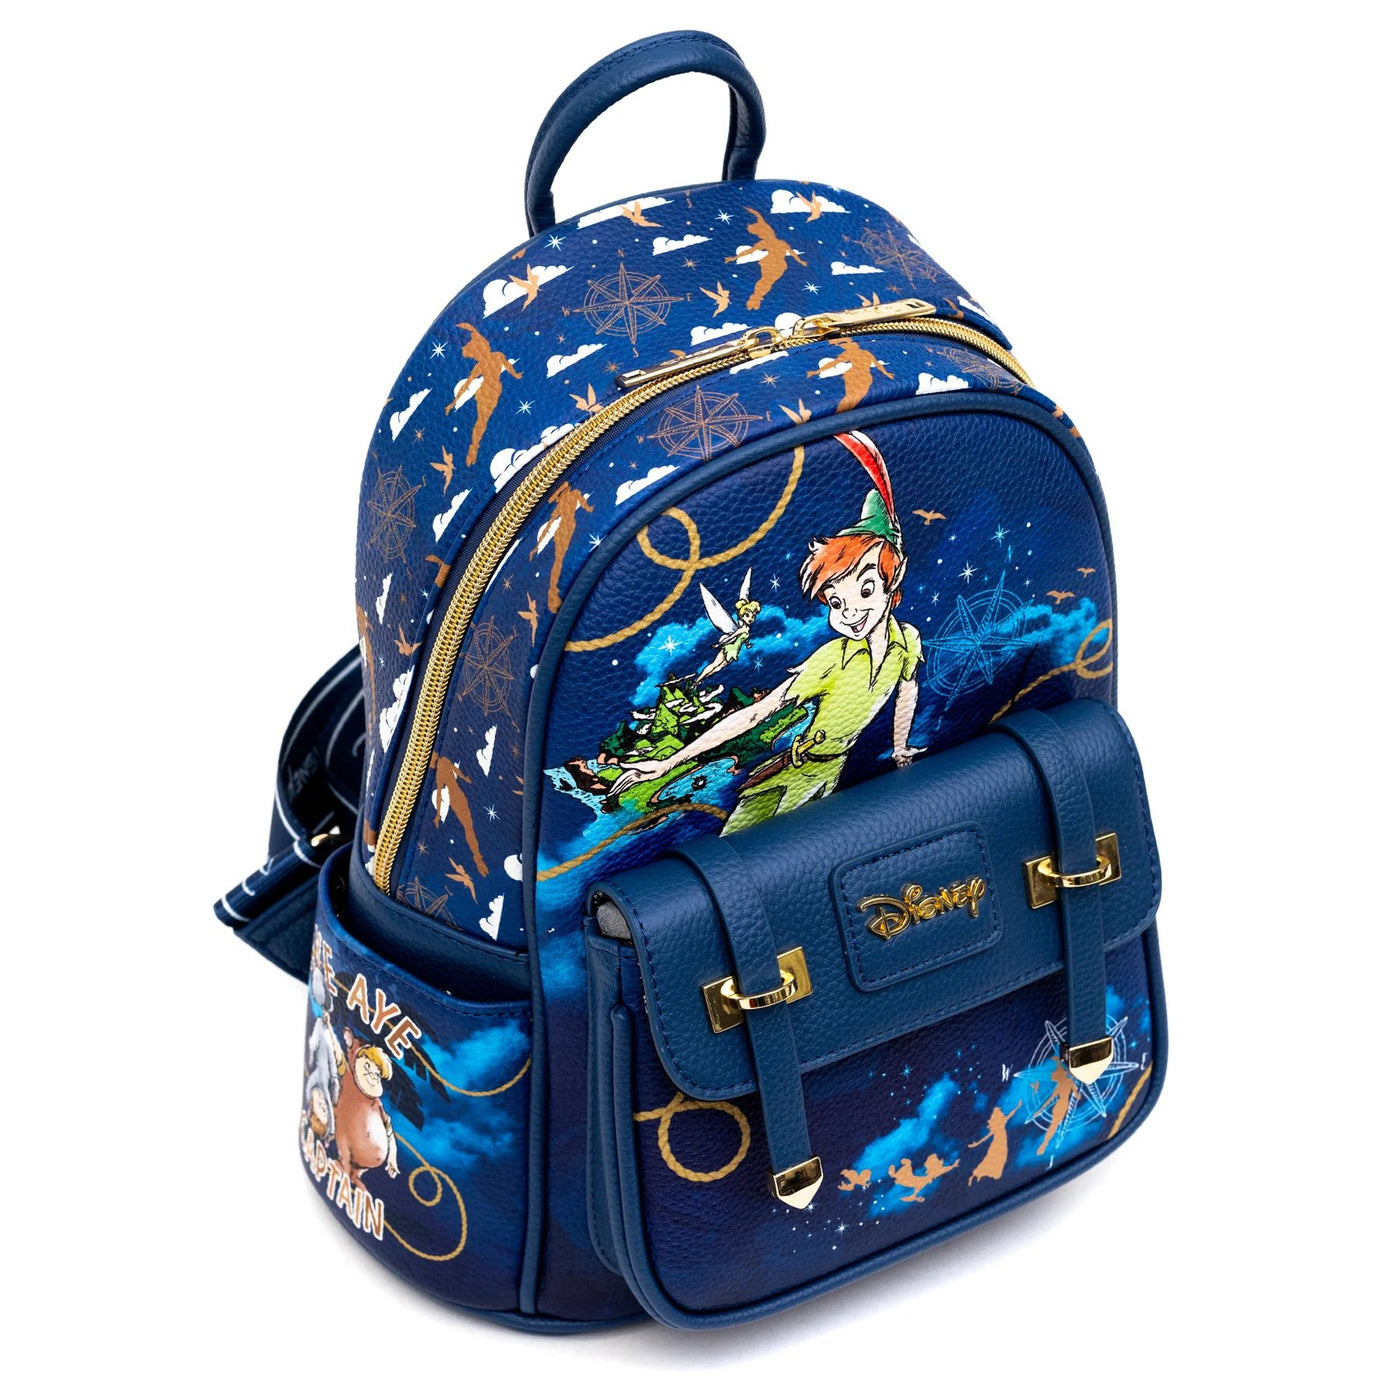 WondaPop Disney Peter Pan Mini Backpack - Alternate Top View